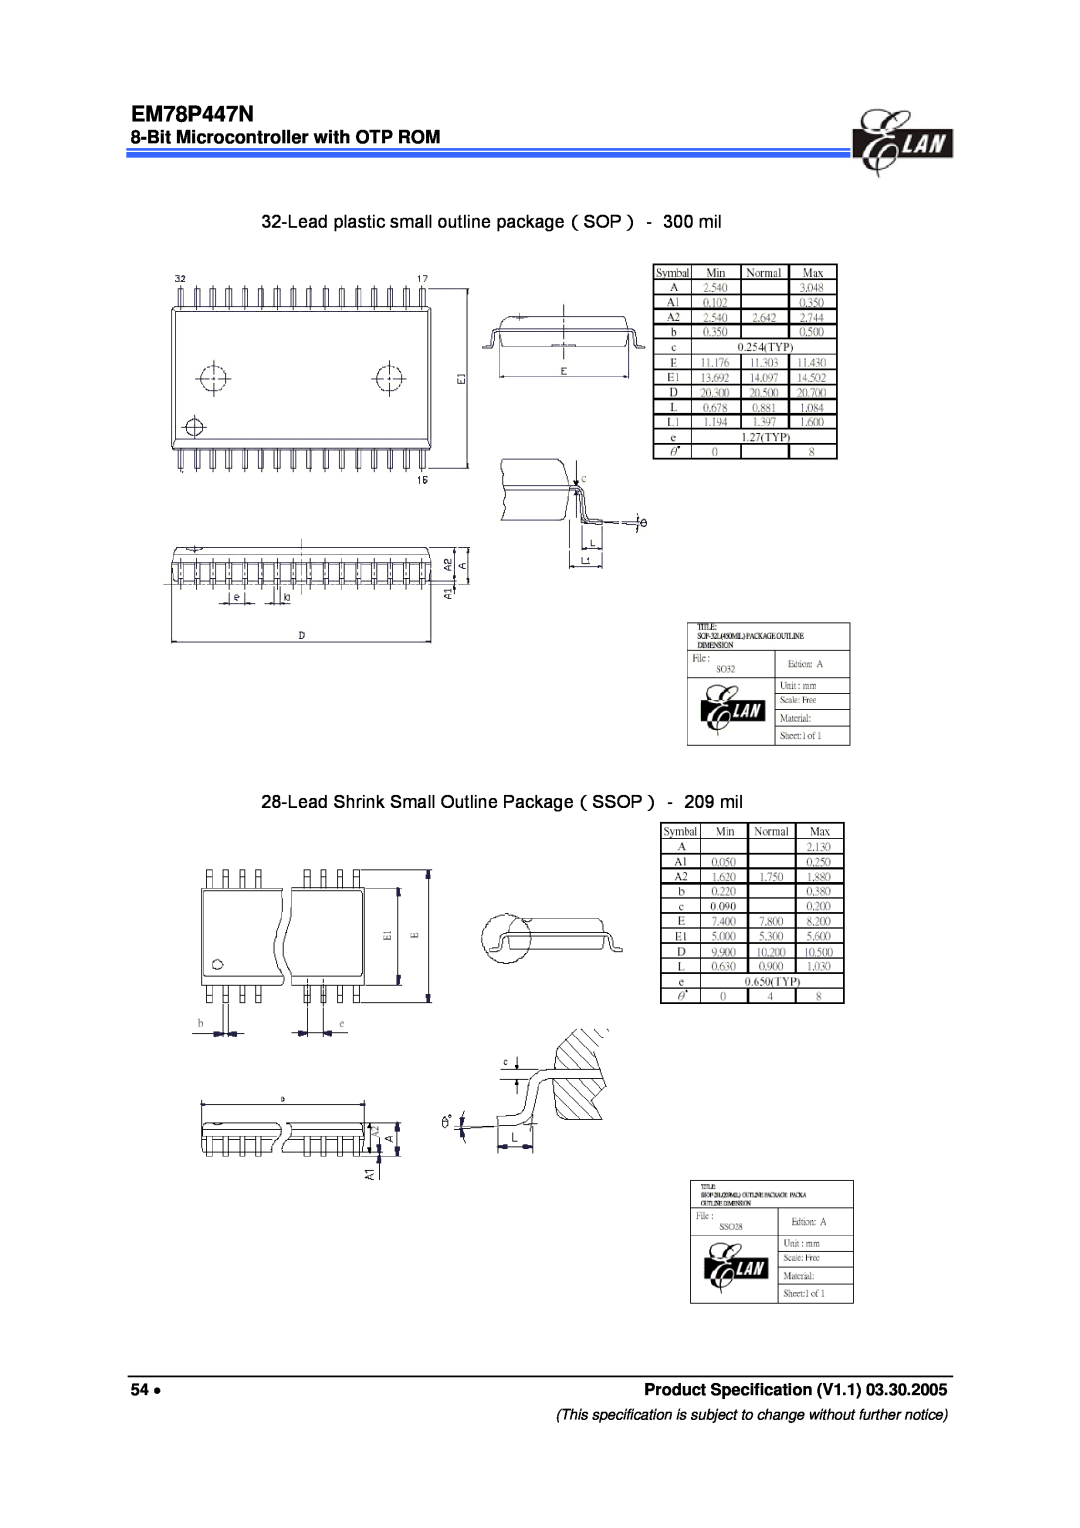 IBM EM78P447N manual Lead plastic small outline package（SOP）－ 300 mil, Lead Shrink Small Outline Package（SSOP）－ 209 mil 